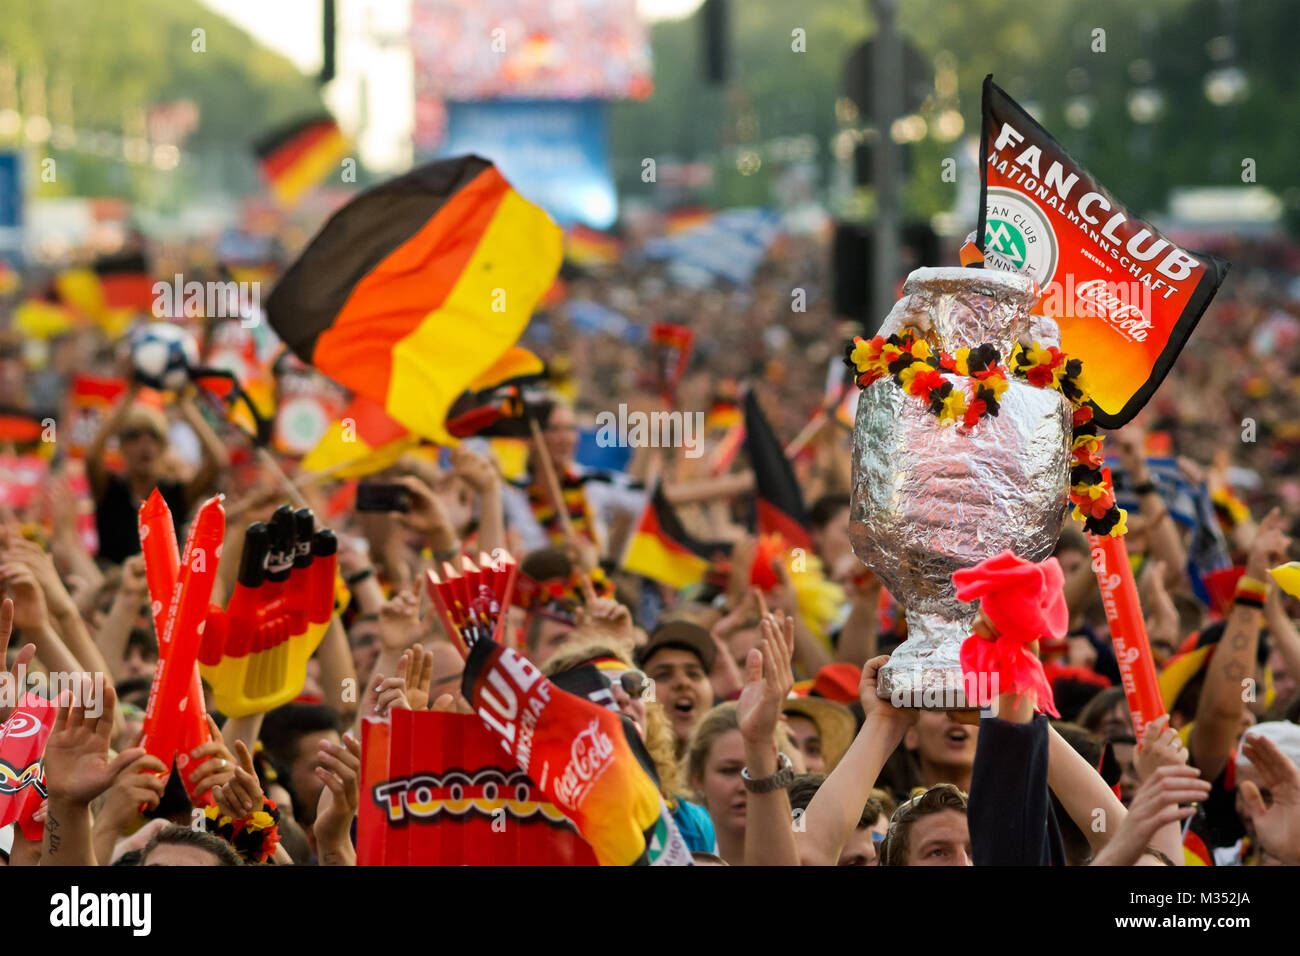 Menschenmassen mit wehenden Deutschen Fahnen auf der Fanmeile zur Europameisterschaft 2012 Deutschland gegen Griechenland am Brandenburger Tor in Berlin Foto Stock